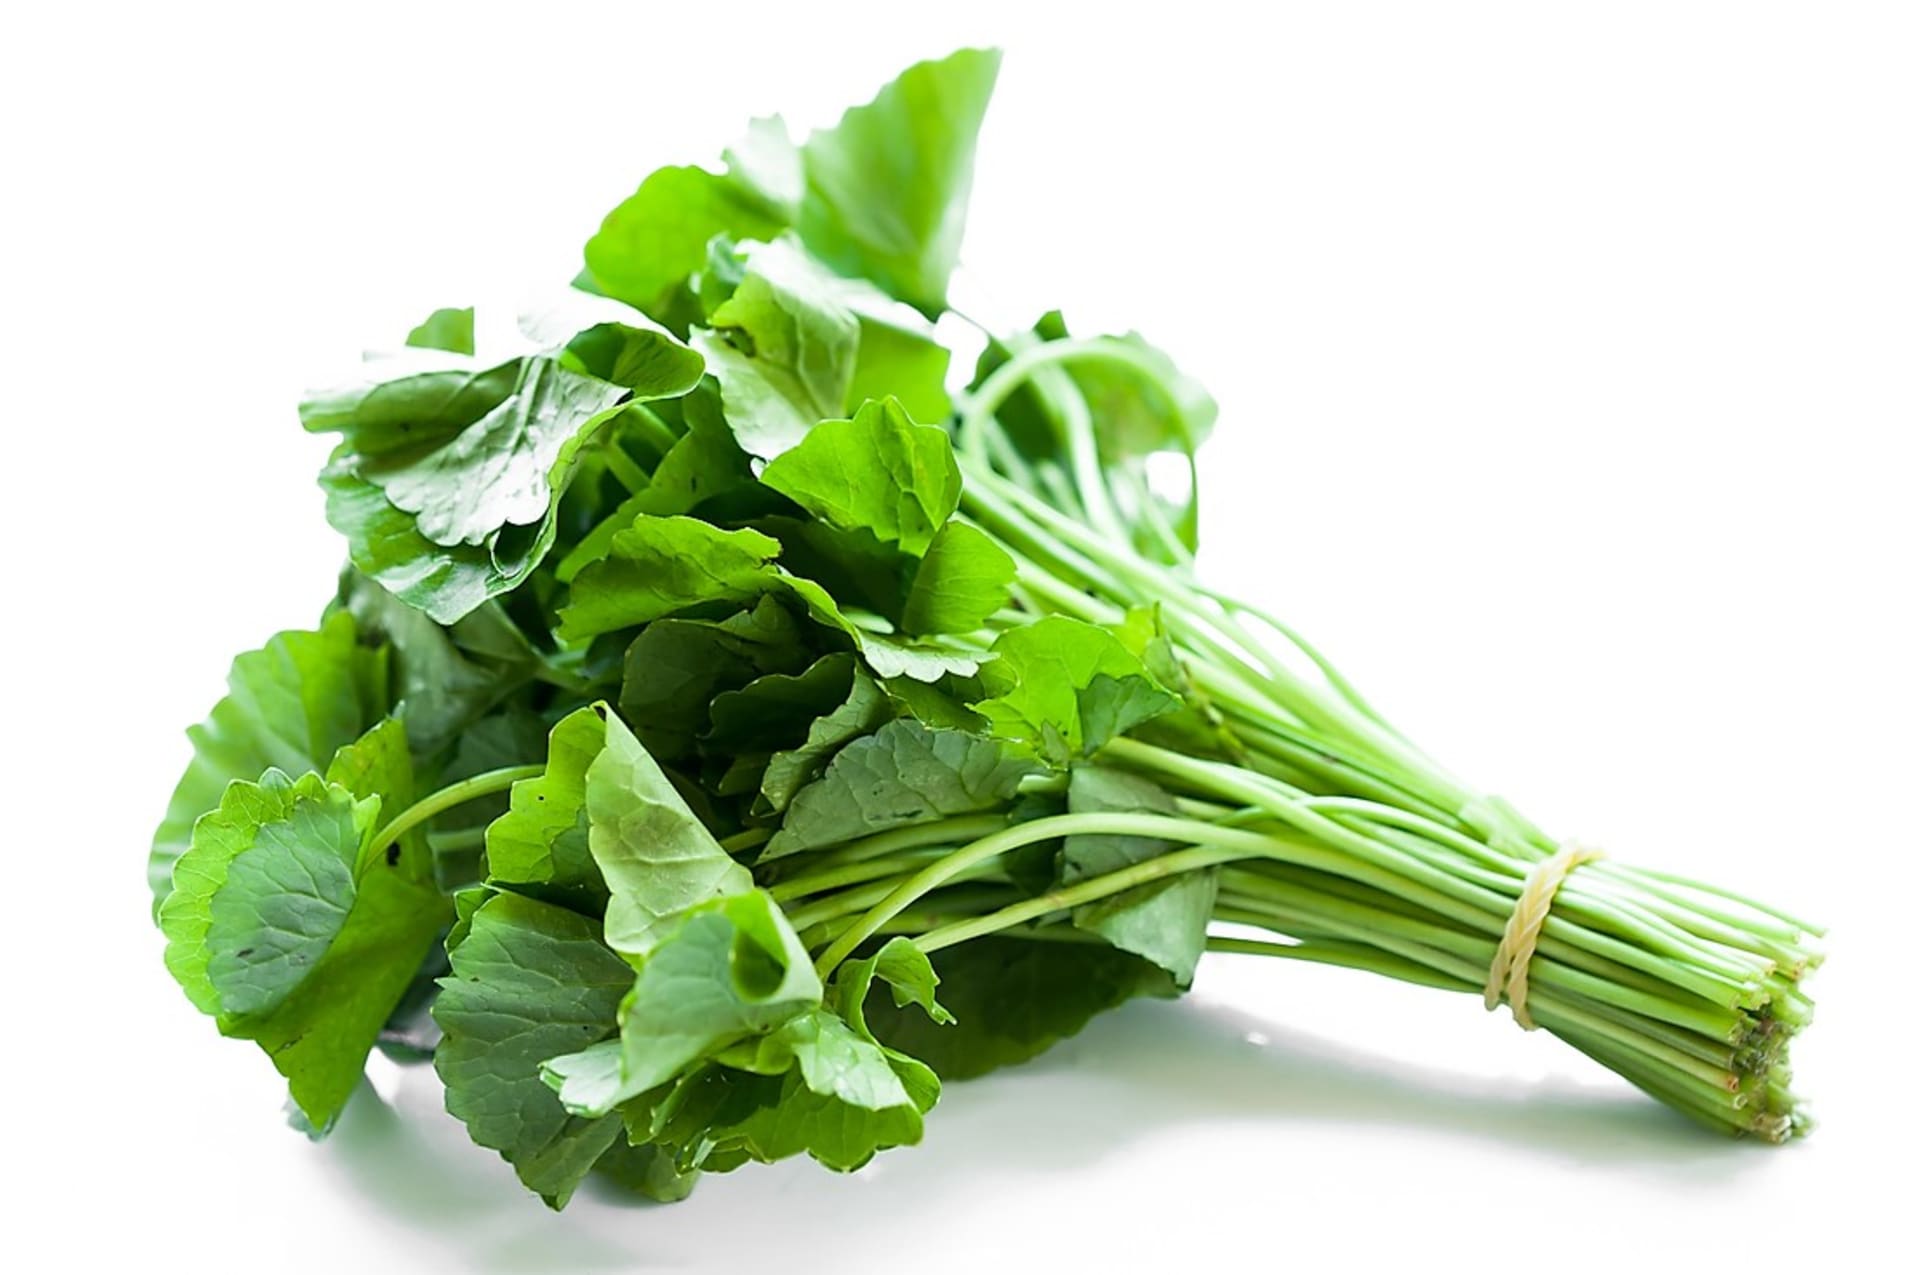 Čerstvé listy pupečníku můžeme přidávat do zeleninových salátů nebo i dalších jídel podobně jako například špenát.